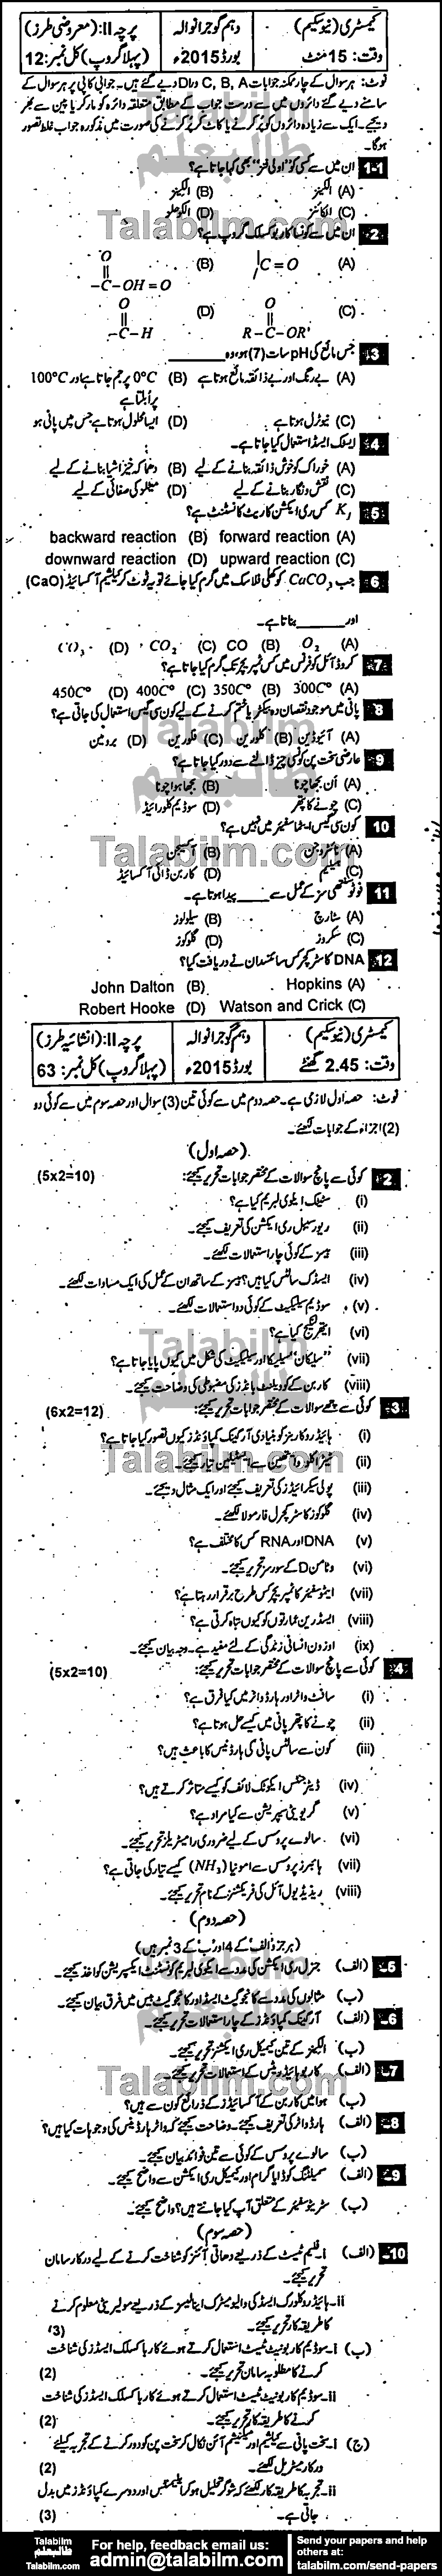 Chemistry 0 past paper for Urdu Medium 2015 Group-I